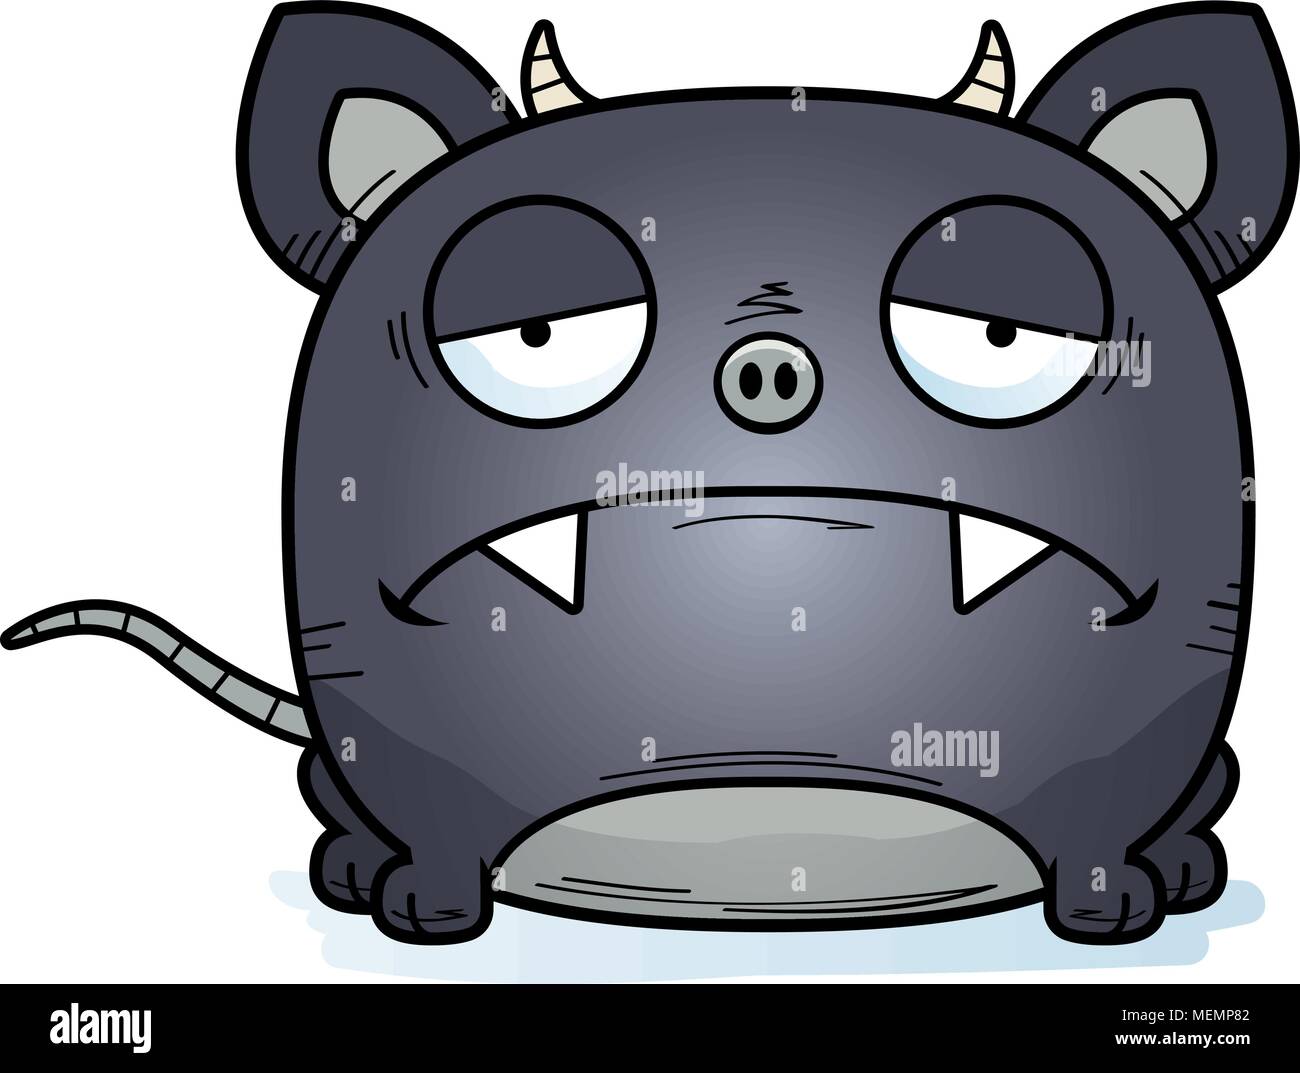 Un cartoon illustrazione di un po' di chupacabra con un espressione triste. Illustrazione Vettoriale